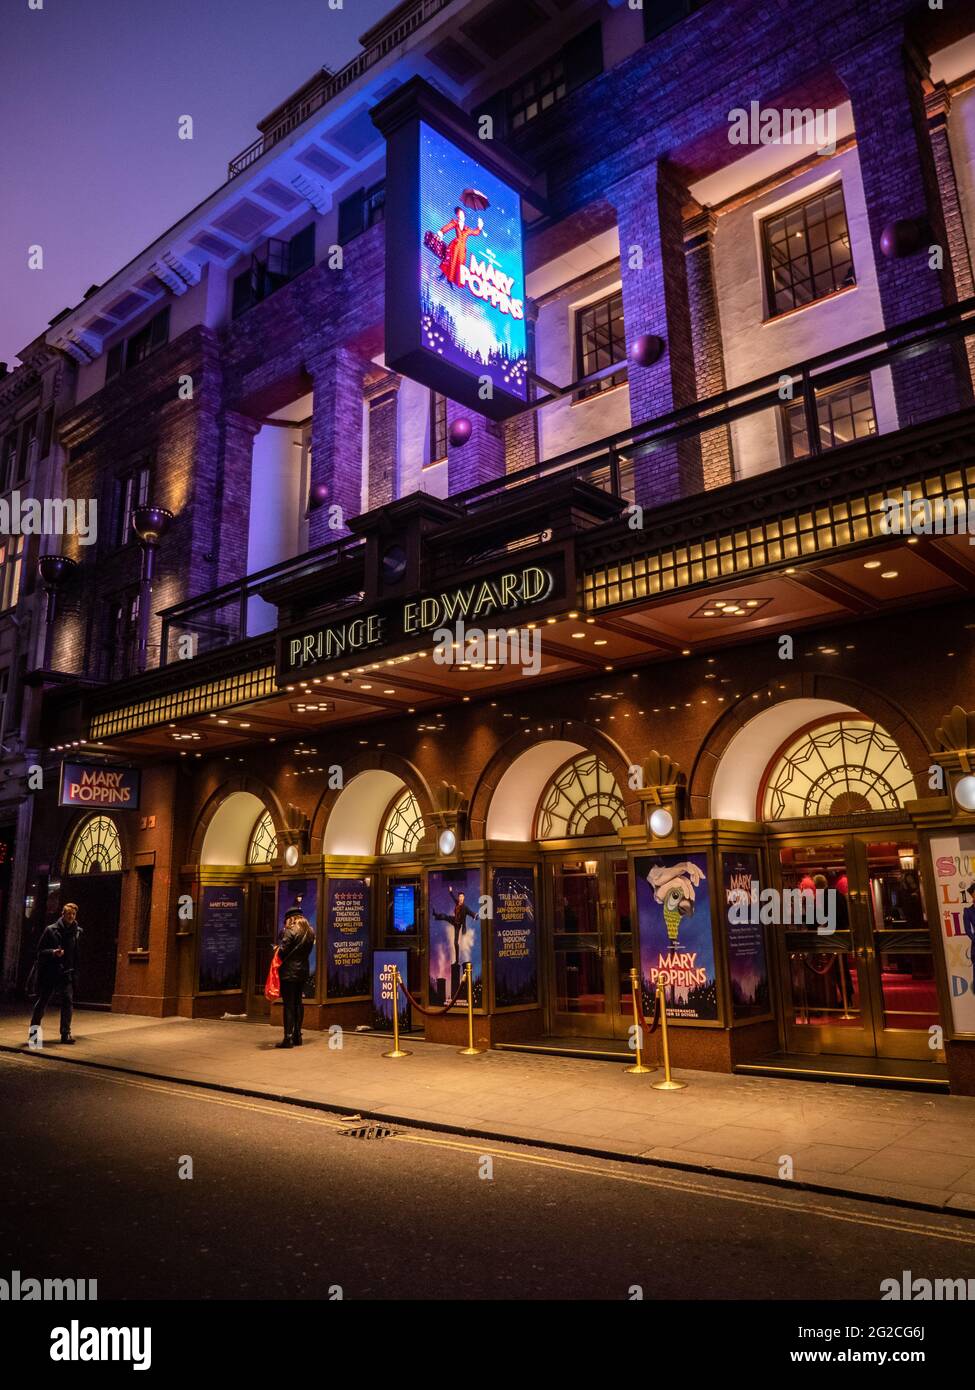 Le théâtre Prince Edward, au cœur du quartier des théâtres du West End de Londres, présente une production de Mary Poppins. Banque D'Images